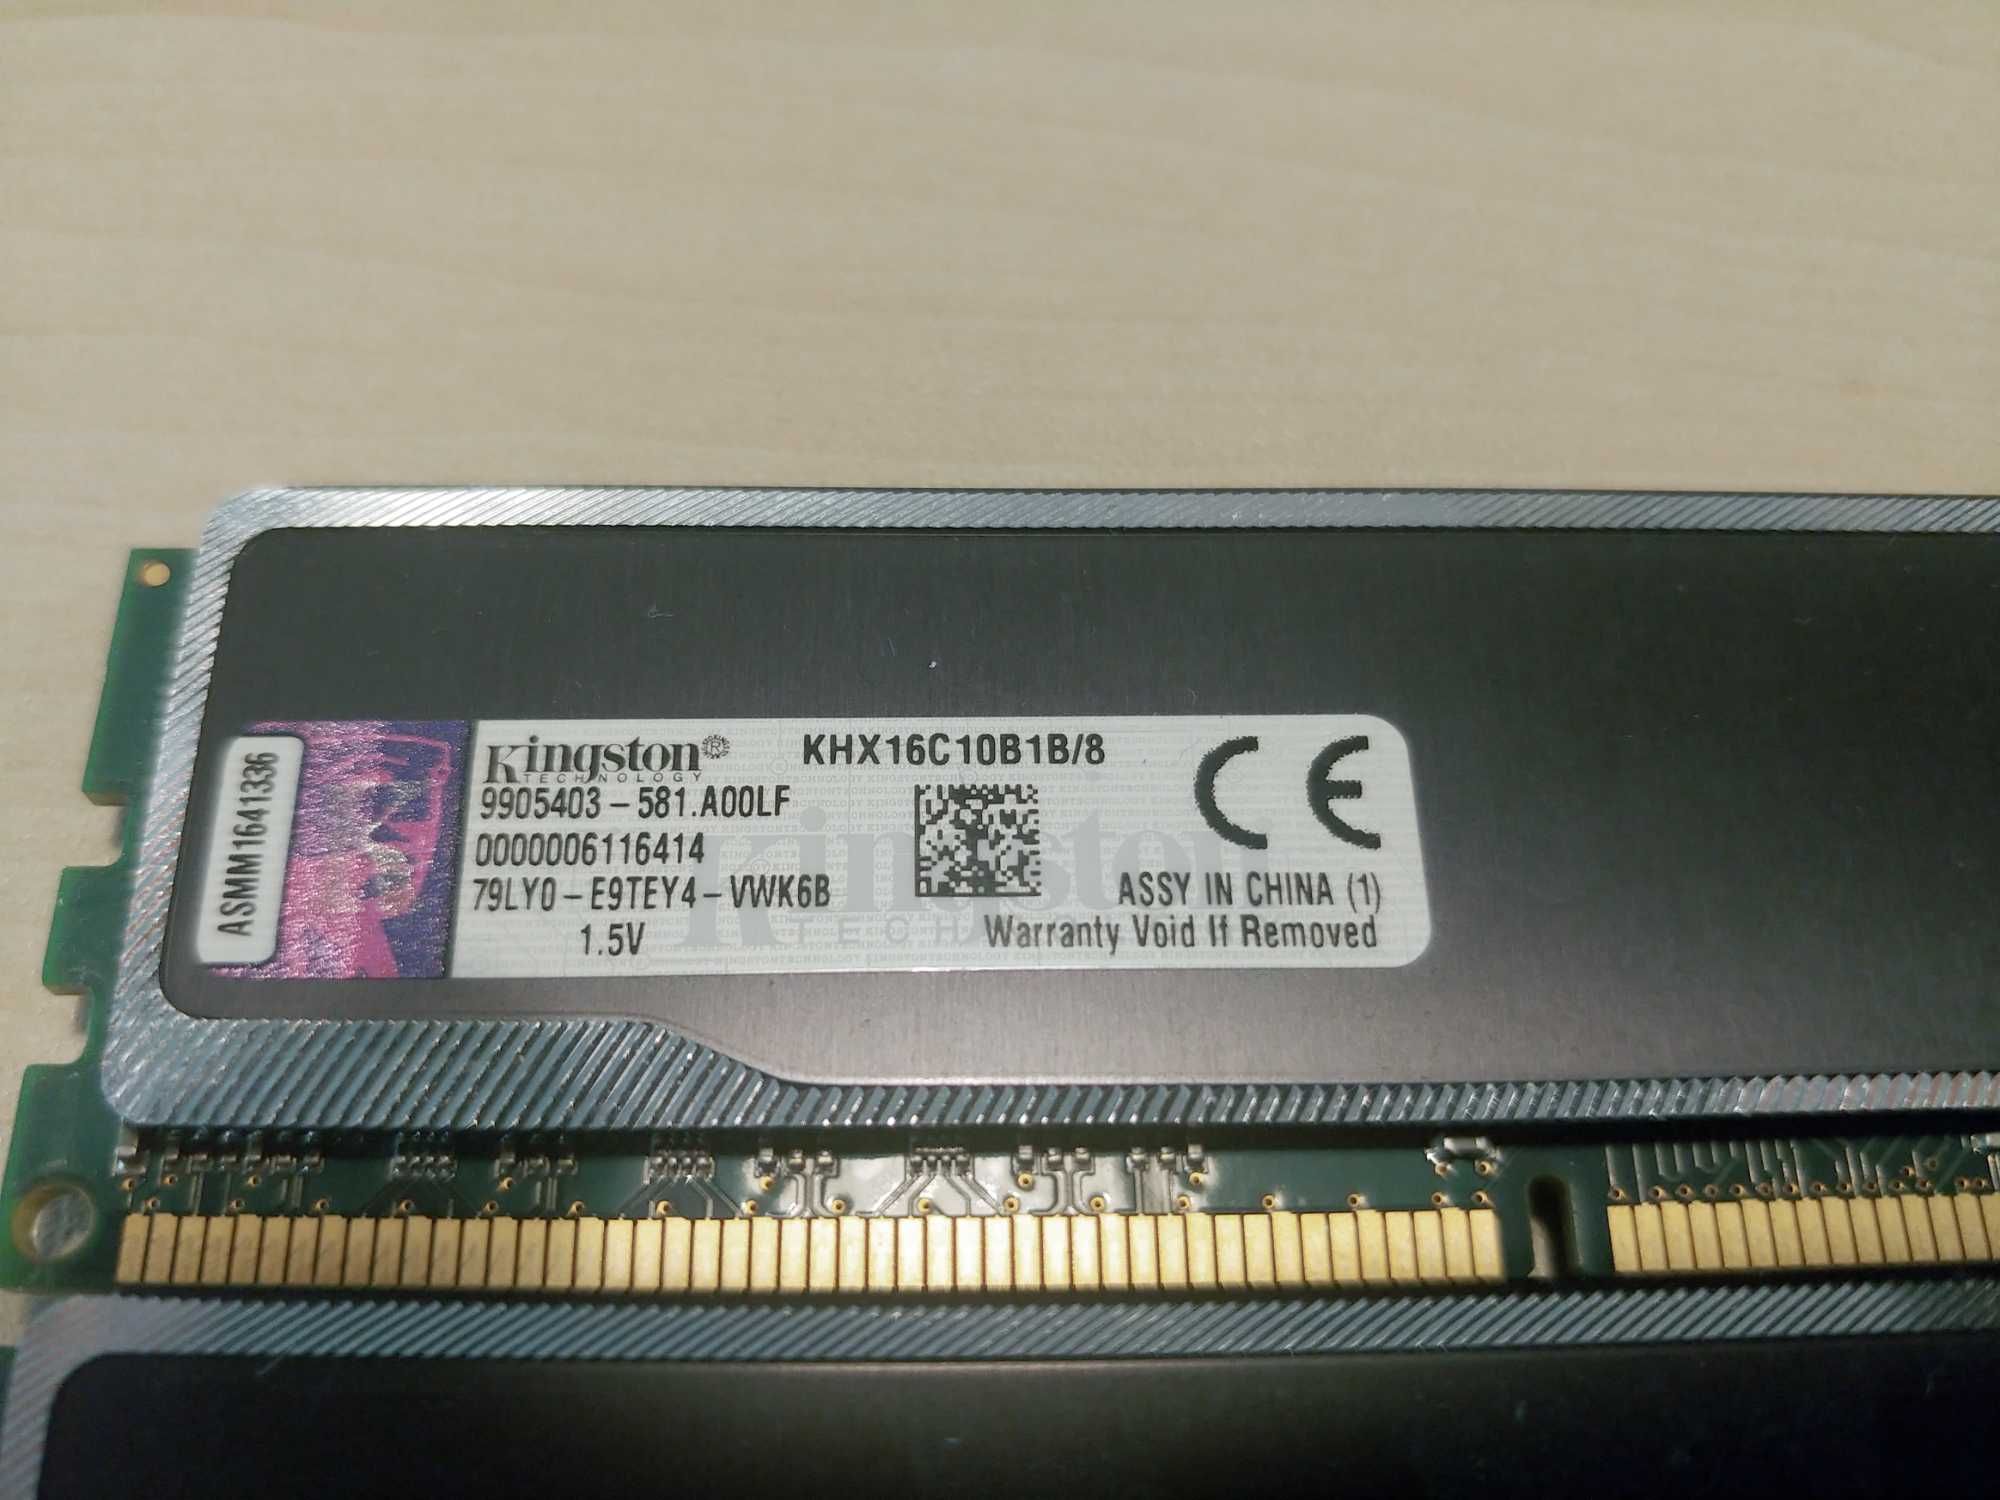 RAM 8gb DDR3-1600 KHX16C10B1B/8